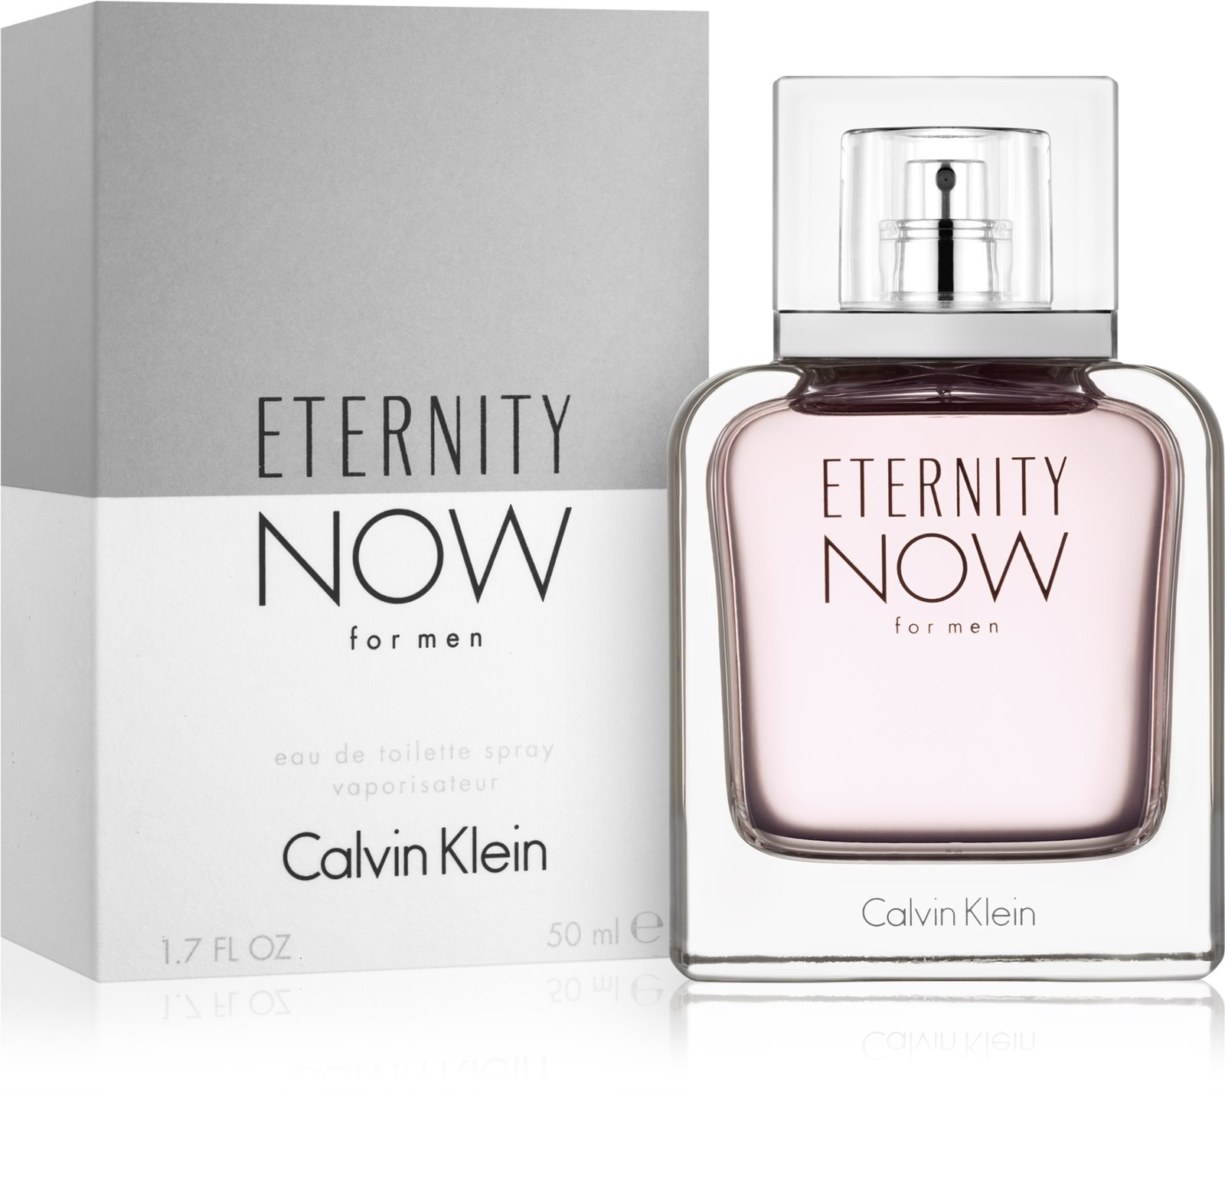 Eternity Now de Calvin Klein